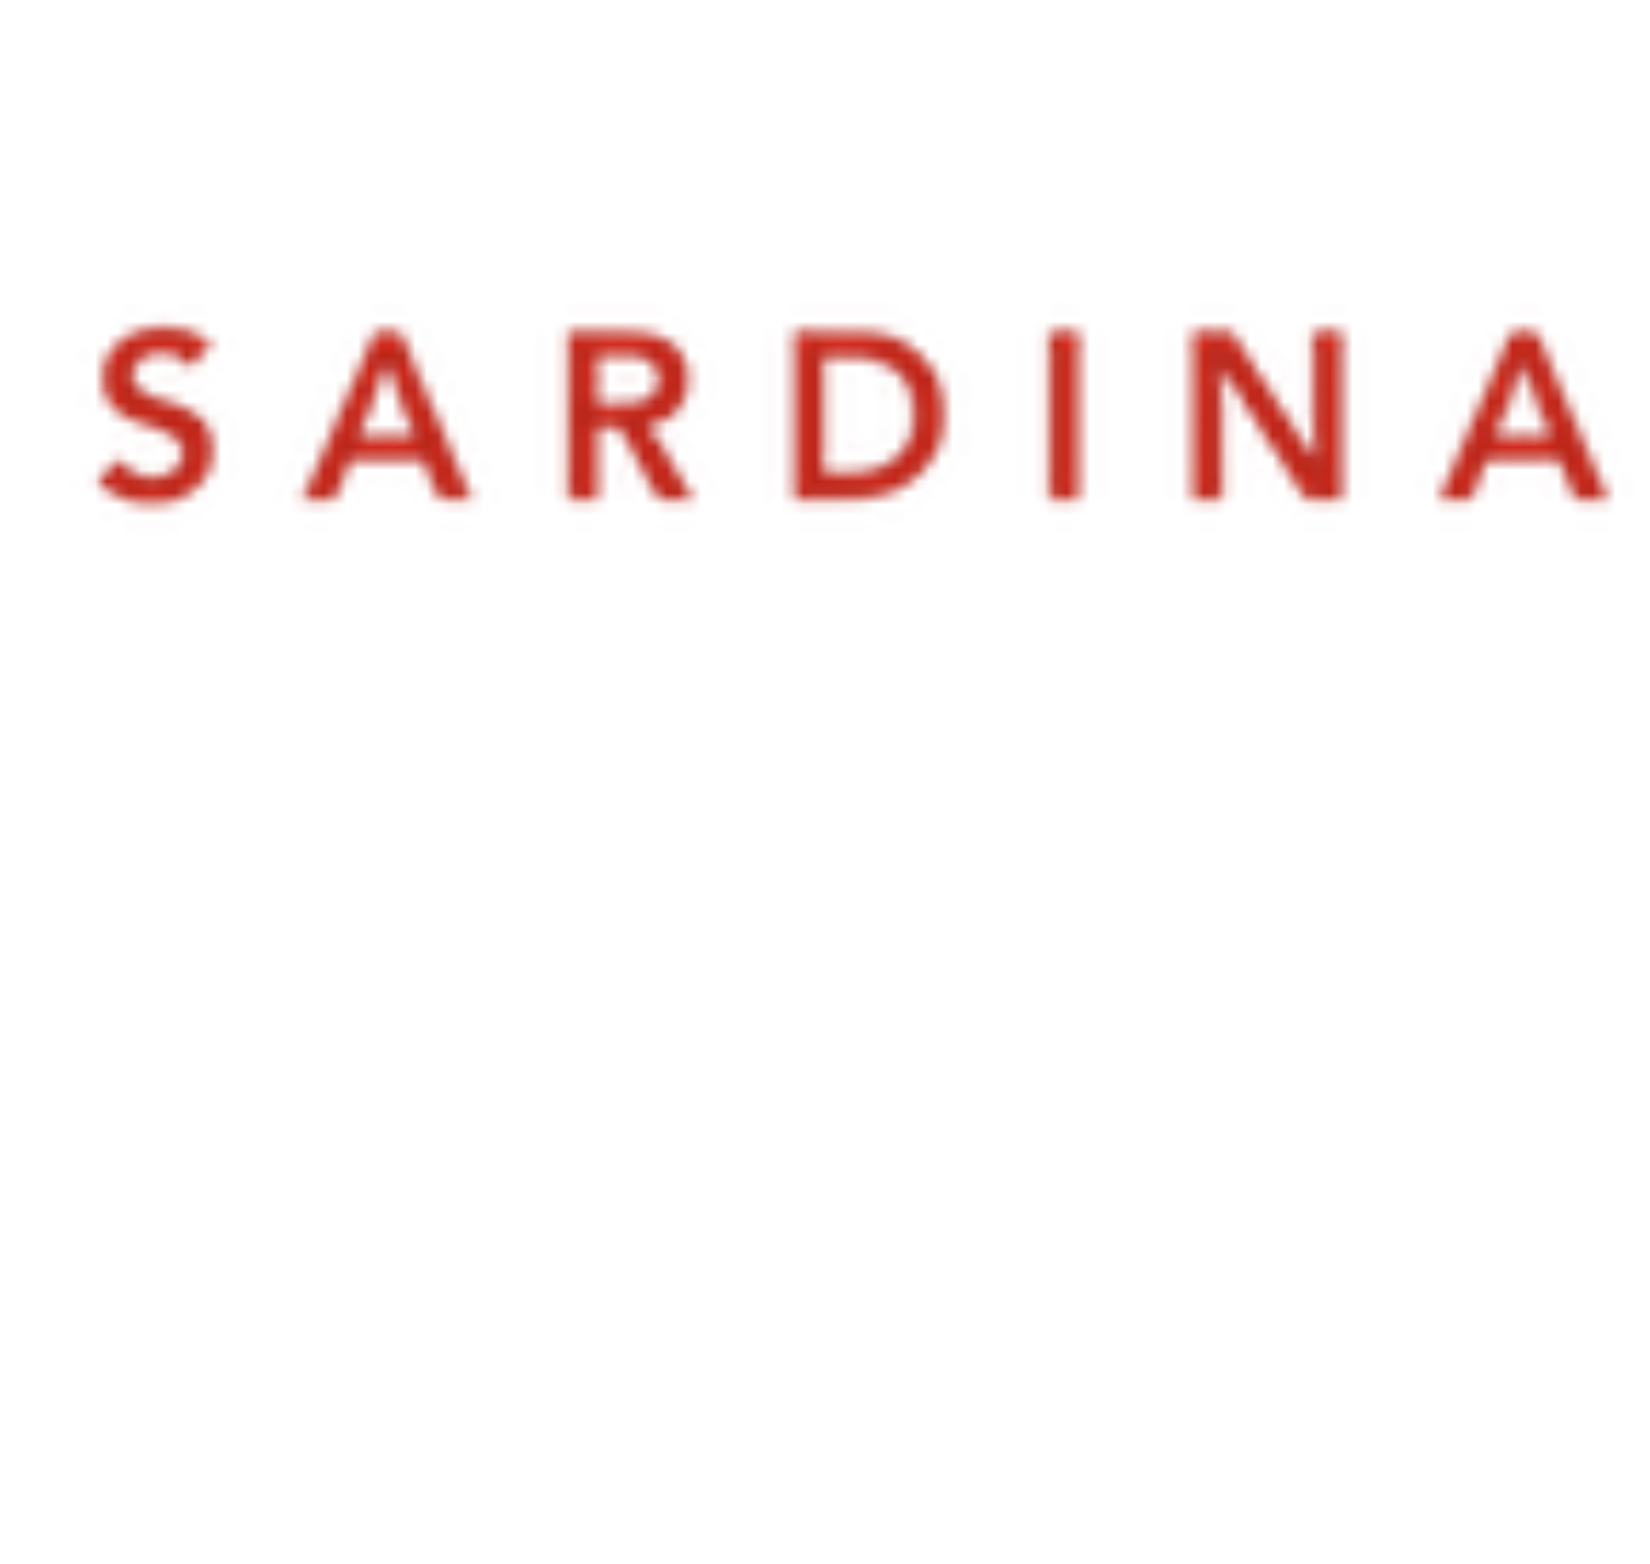 Sardina Systems